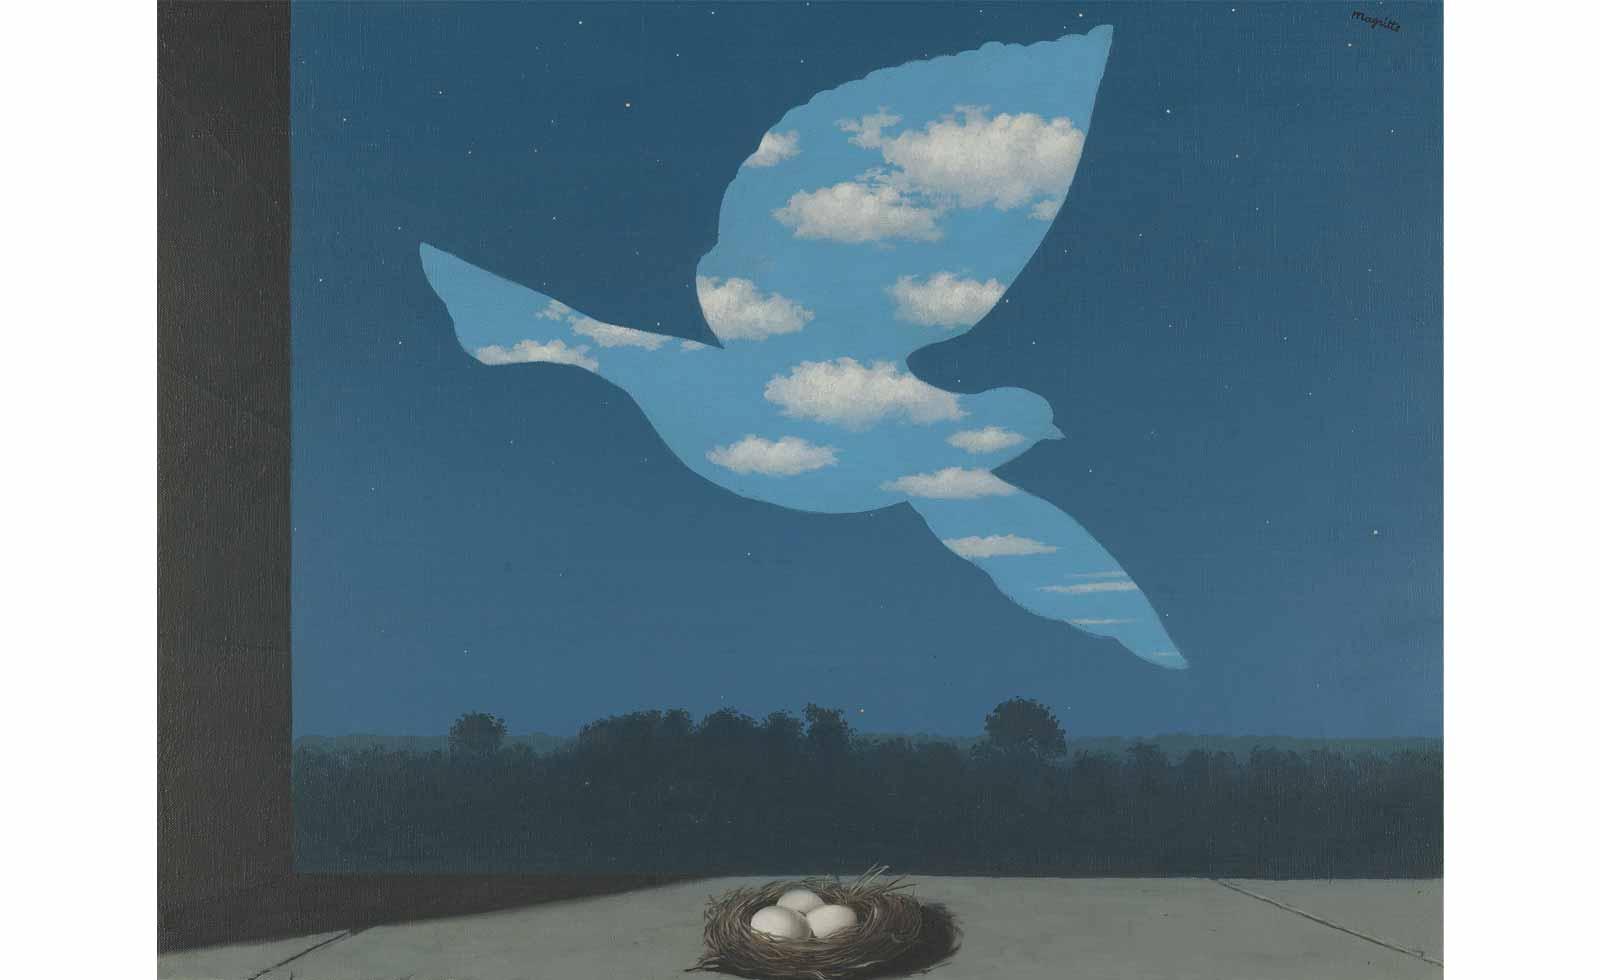 René Magritte, The Return, 1940. Oil on canvas.